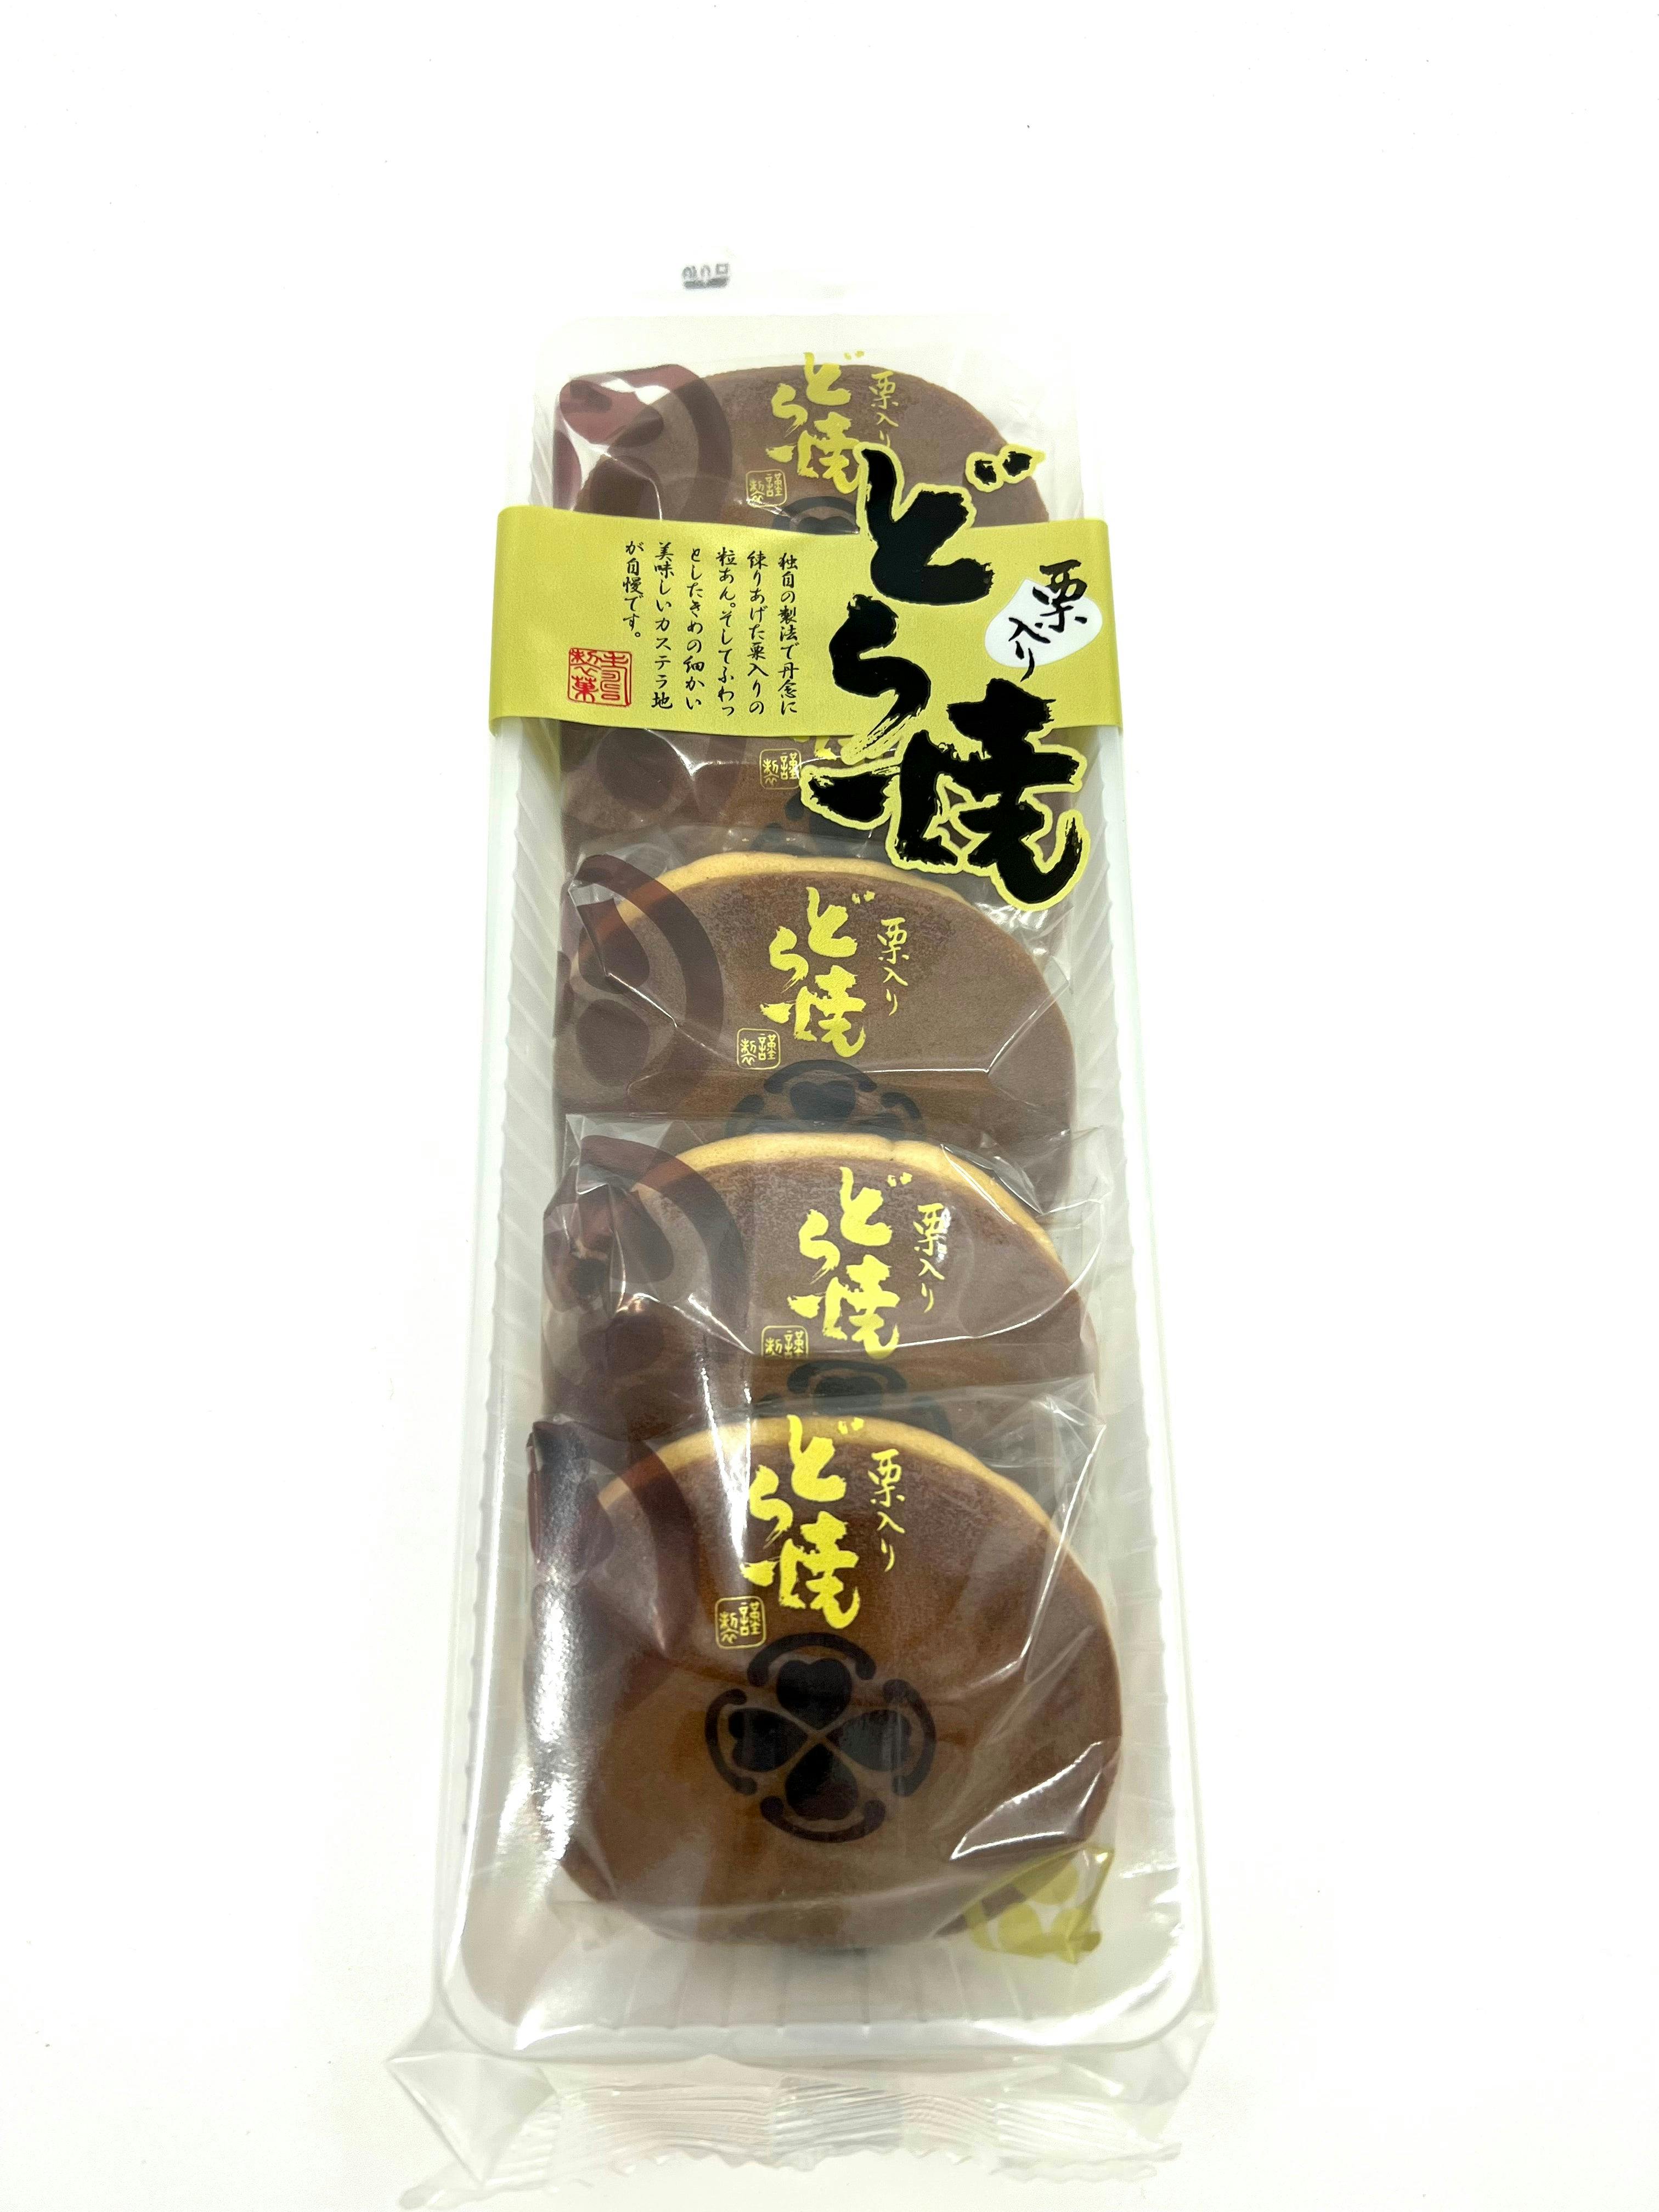 寿制菓 Kotobuki 北海道 栗子 红豆 铜锣烧  Pancake Sweet Bean Chestnuts 12.5oz